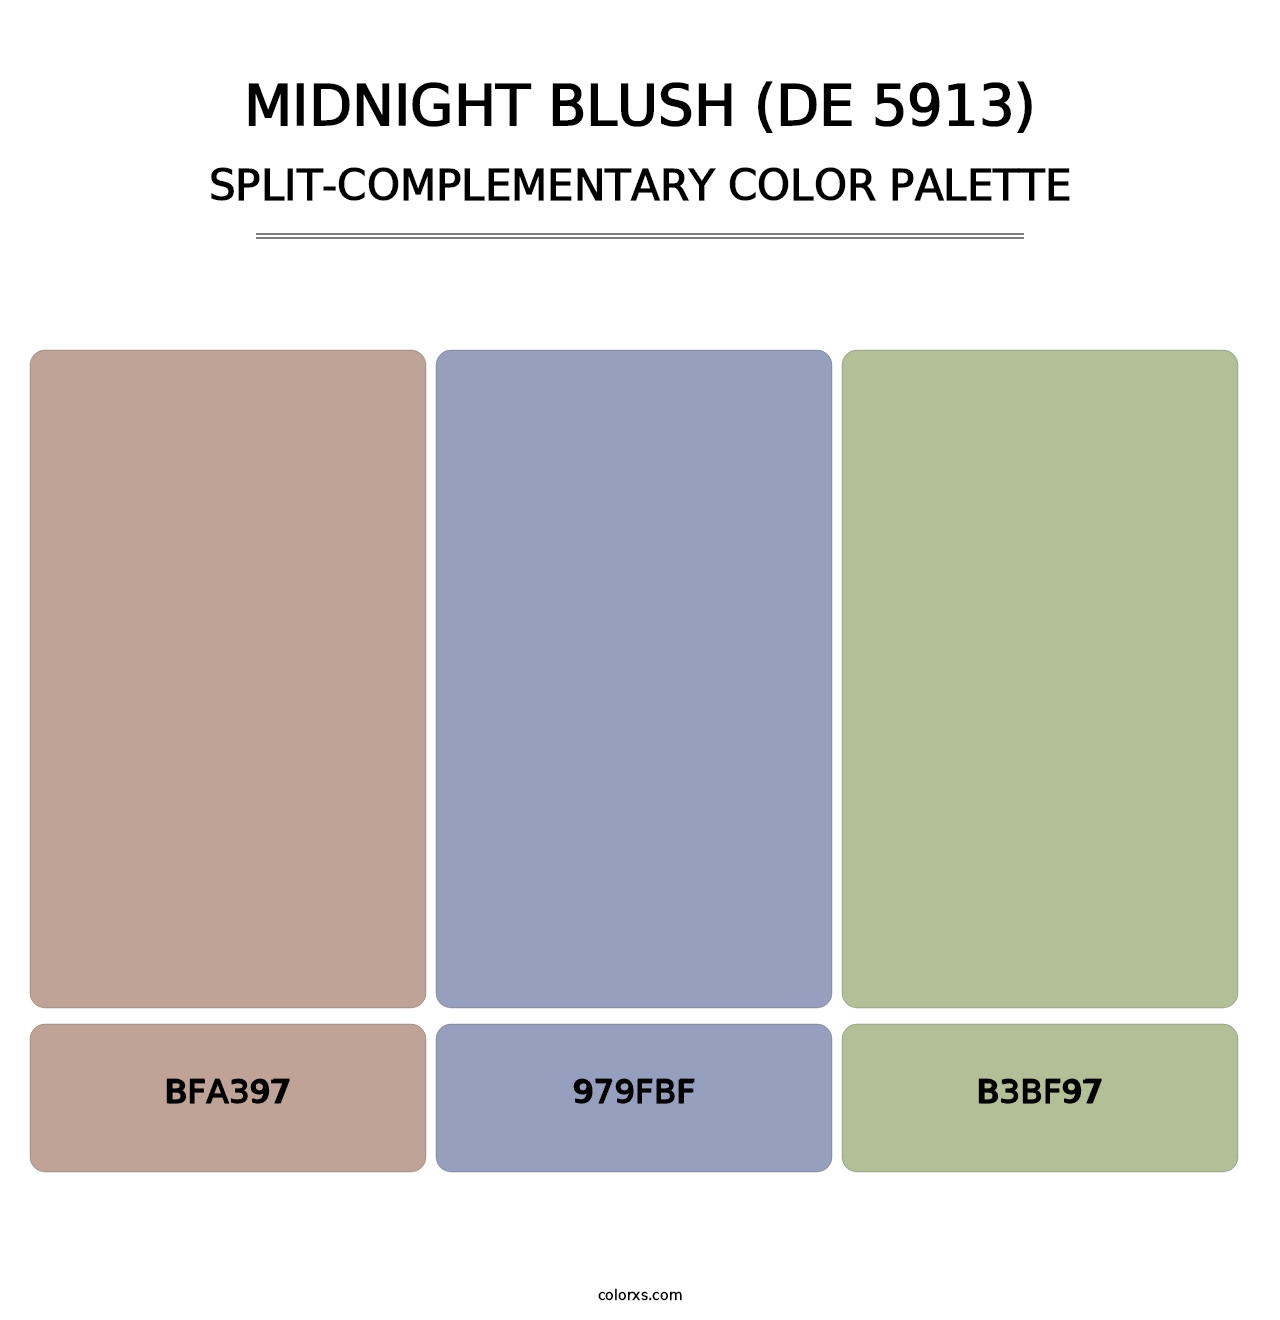 Midnight Blush (DE 5913) - Split-Complementary Color Palette